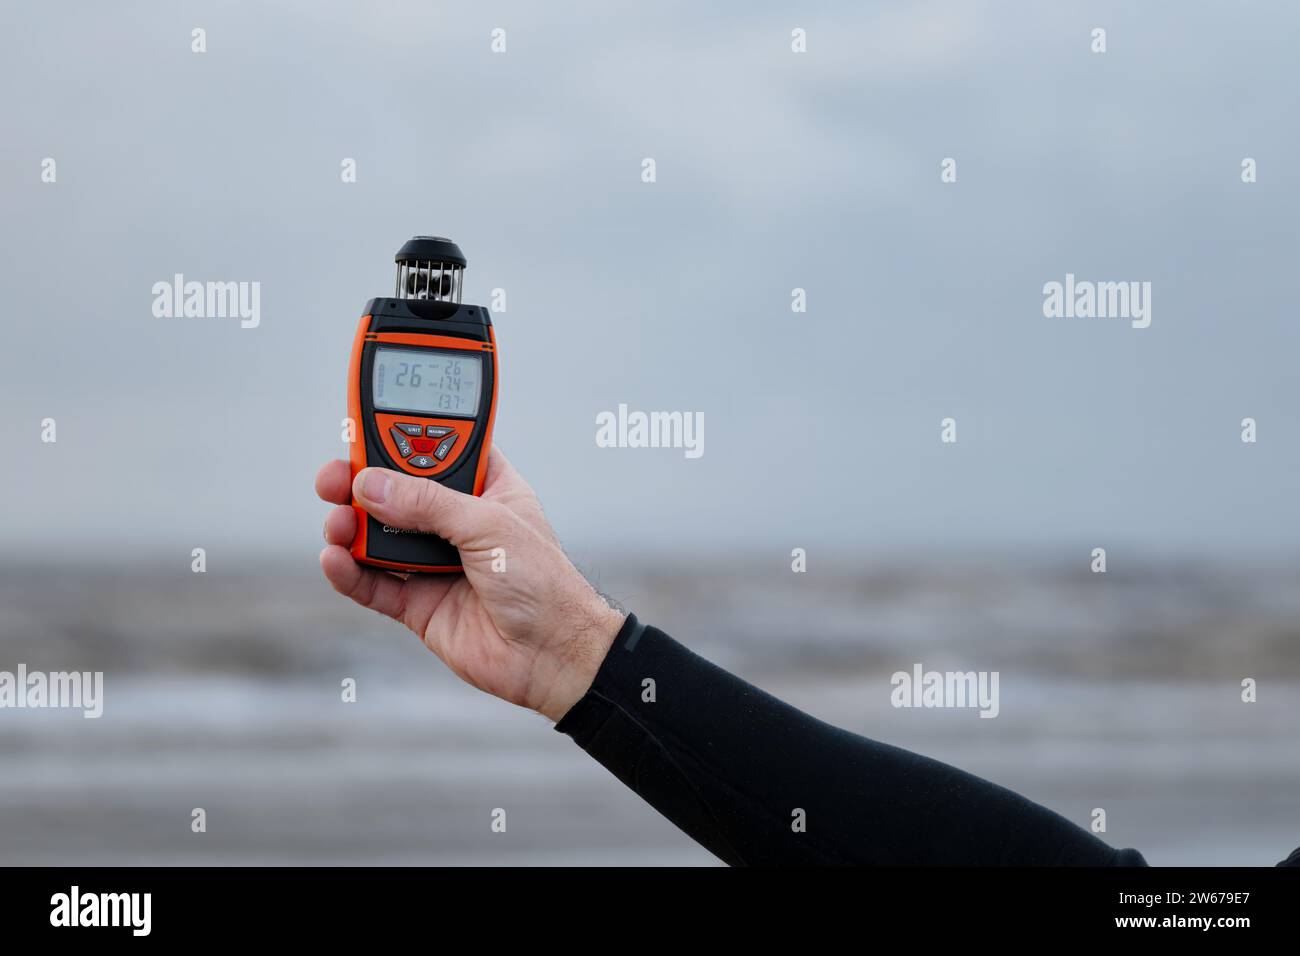 REGNO UNITO. Un uomo in piedi su una spiaggia con un anemometro digitale per infuriare per leggere la velocità, la direzione e la temperatura del vento attuali Foto Stock